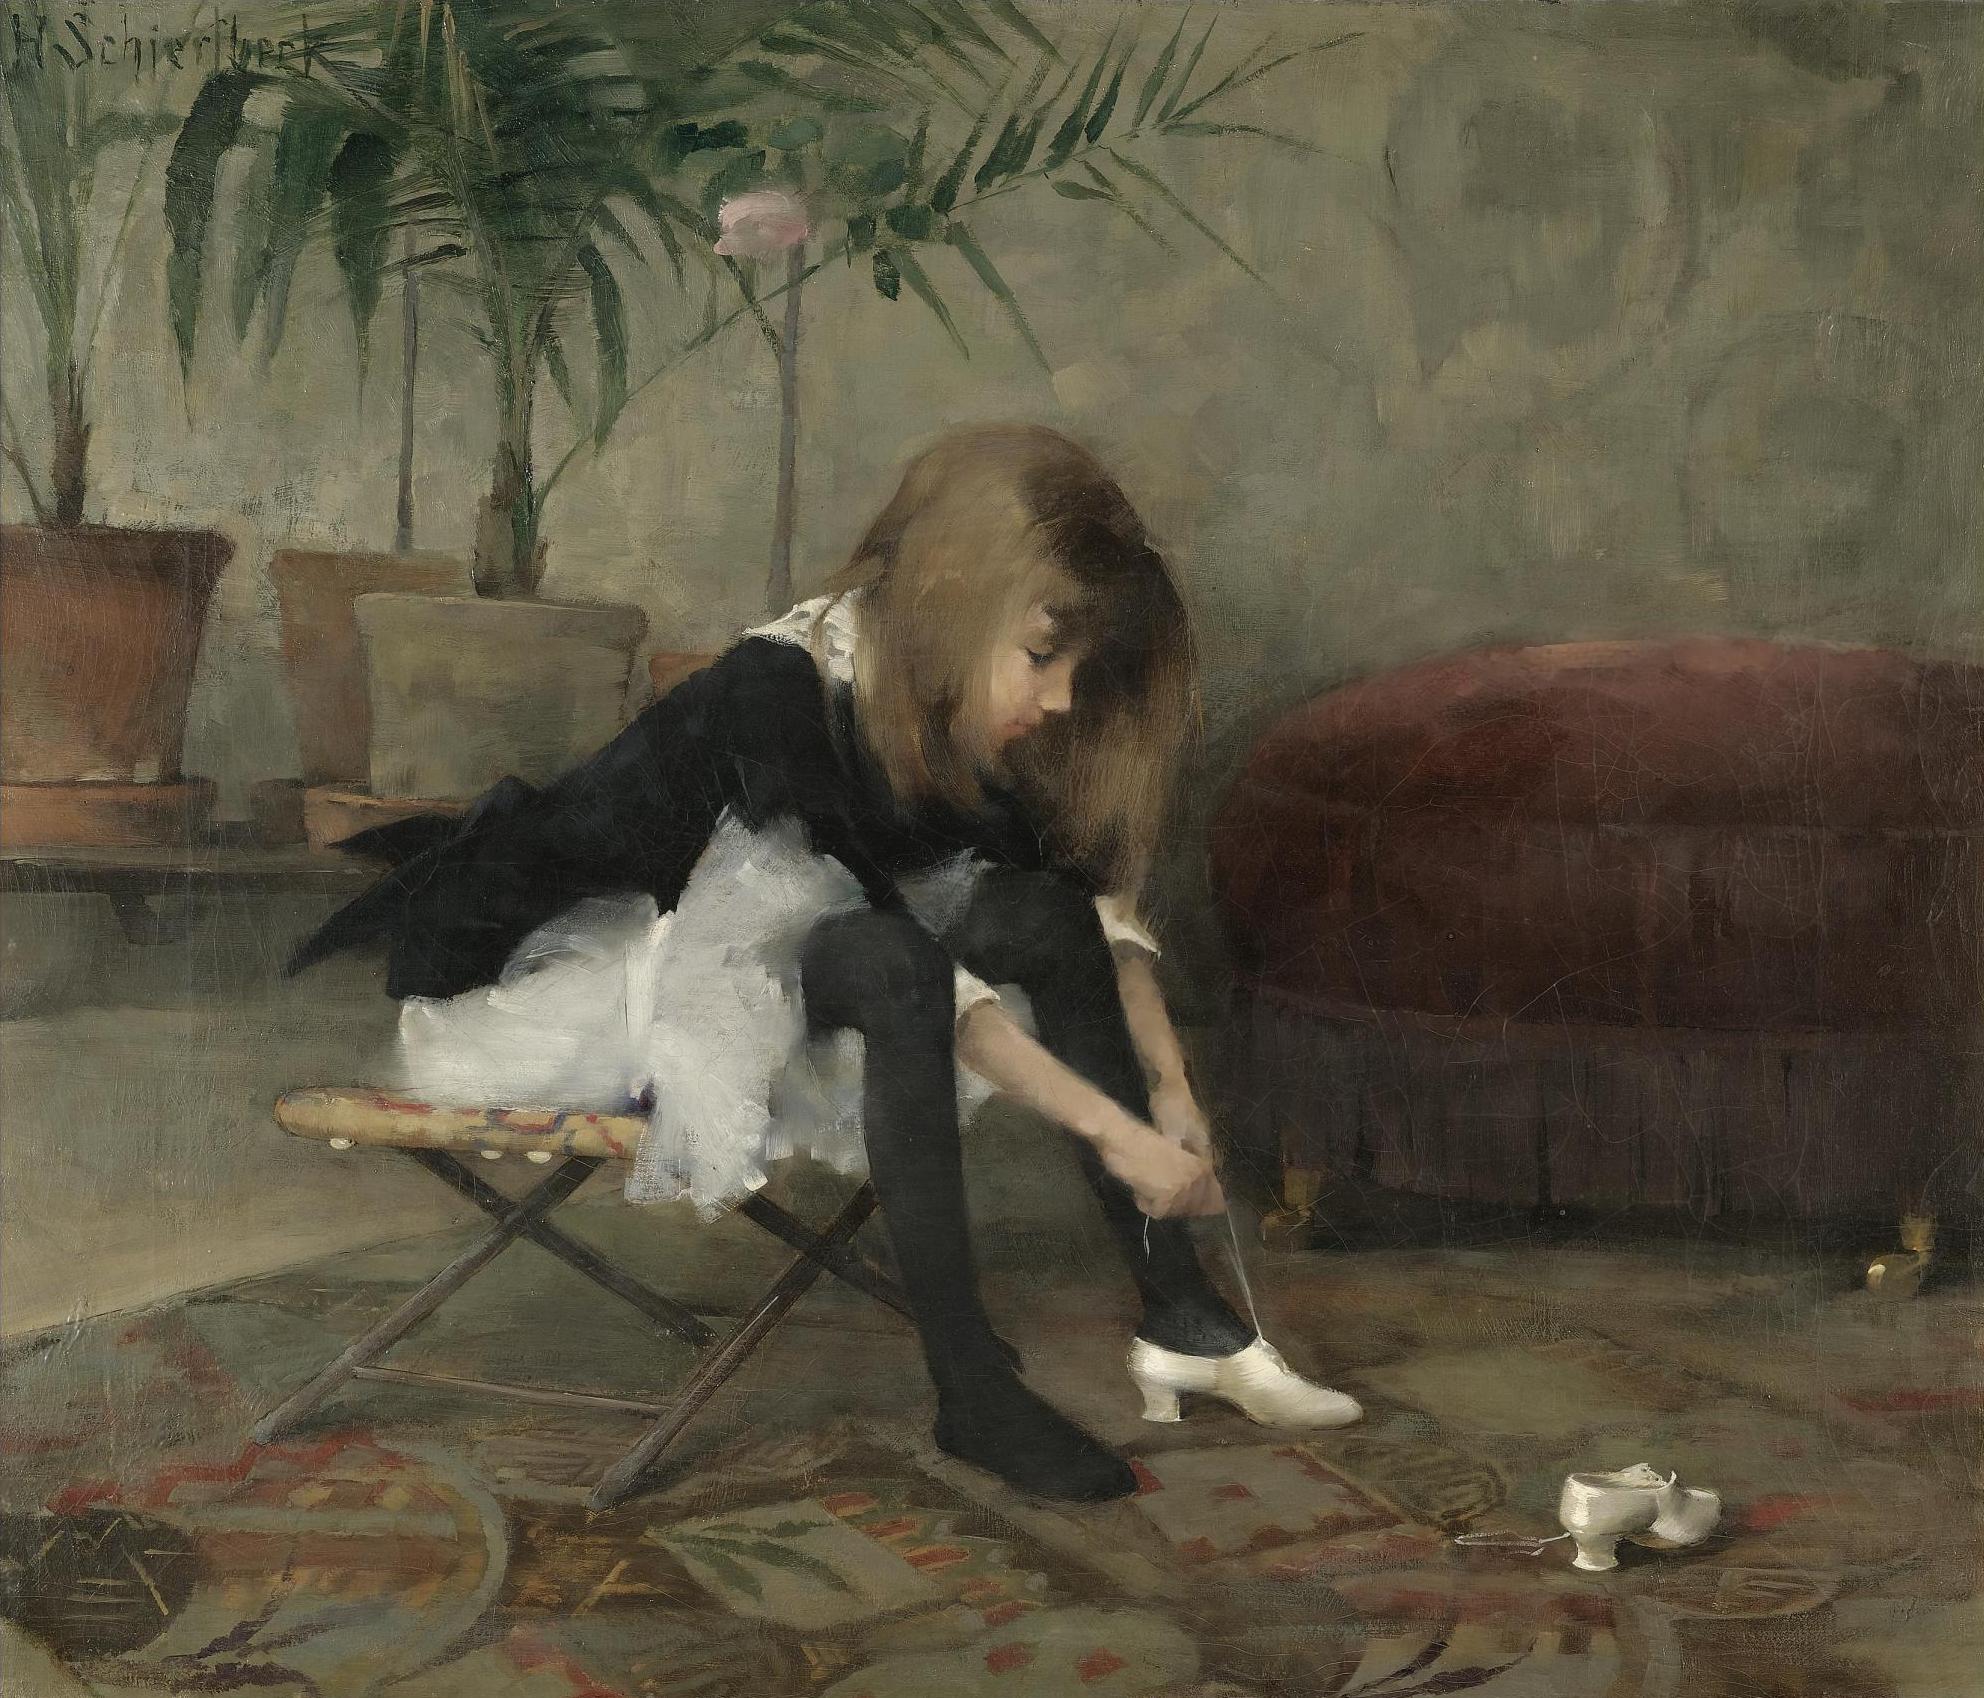 Pantofi dansatori by Helene Schjerfbeck - 1882 - 55 x 64.5 cm 